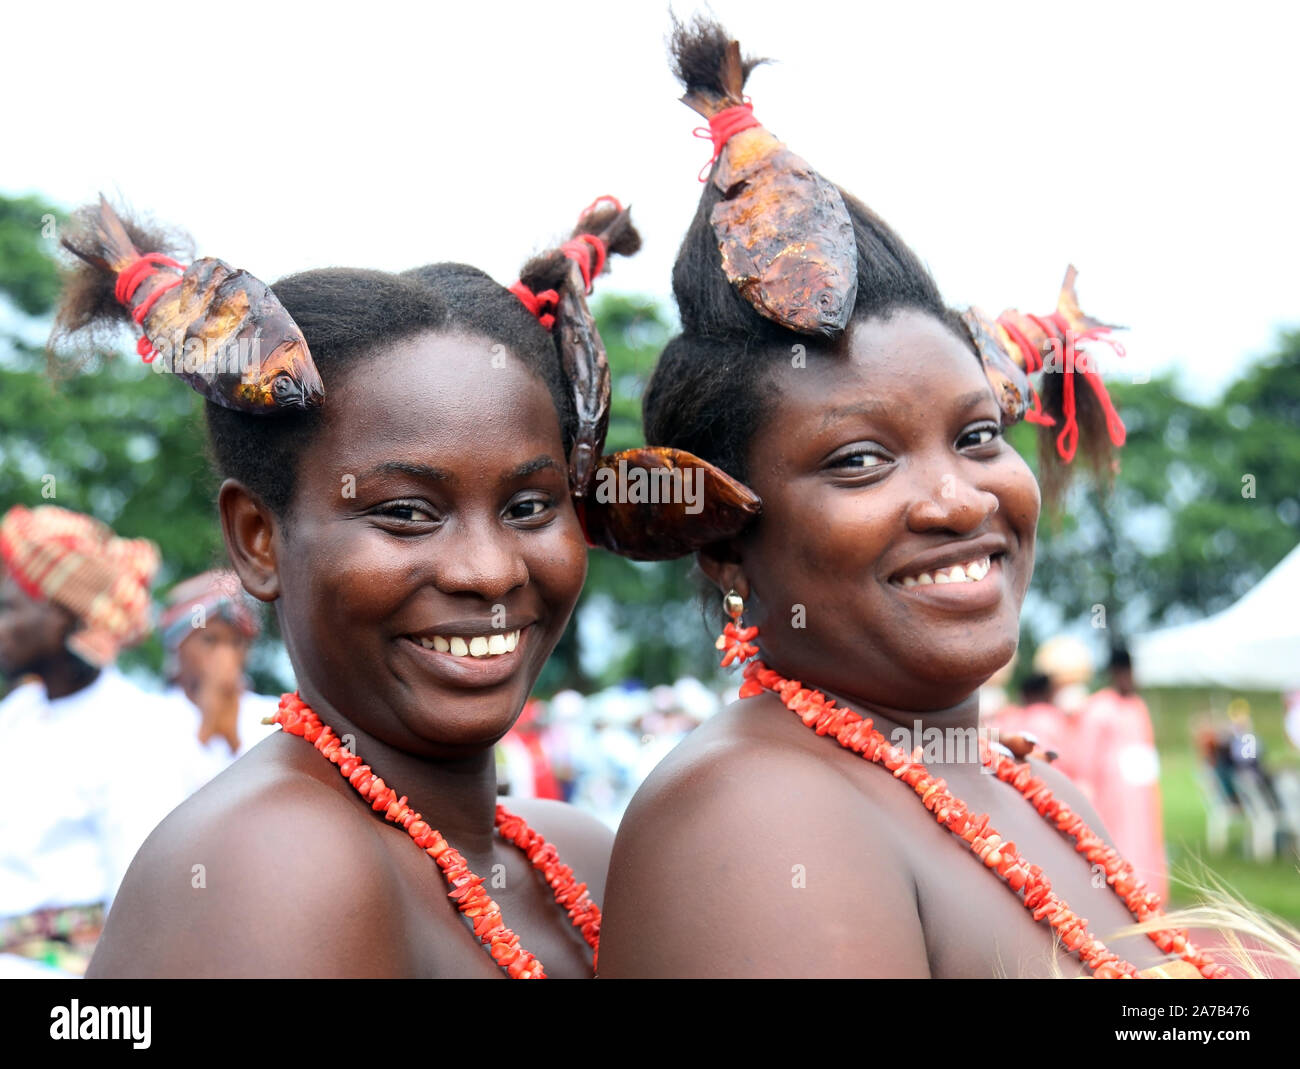 Giovani ragazze africane che mostrano i loro capelli da pesca durante il Festival Nazionale per l'Arte e la Cultura (NAFEST) nello Stato di Edo, Nigeria. Foto Stock